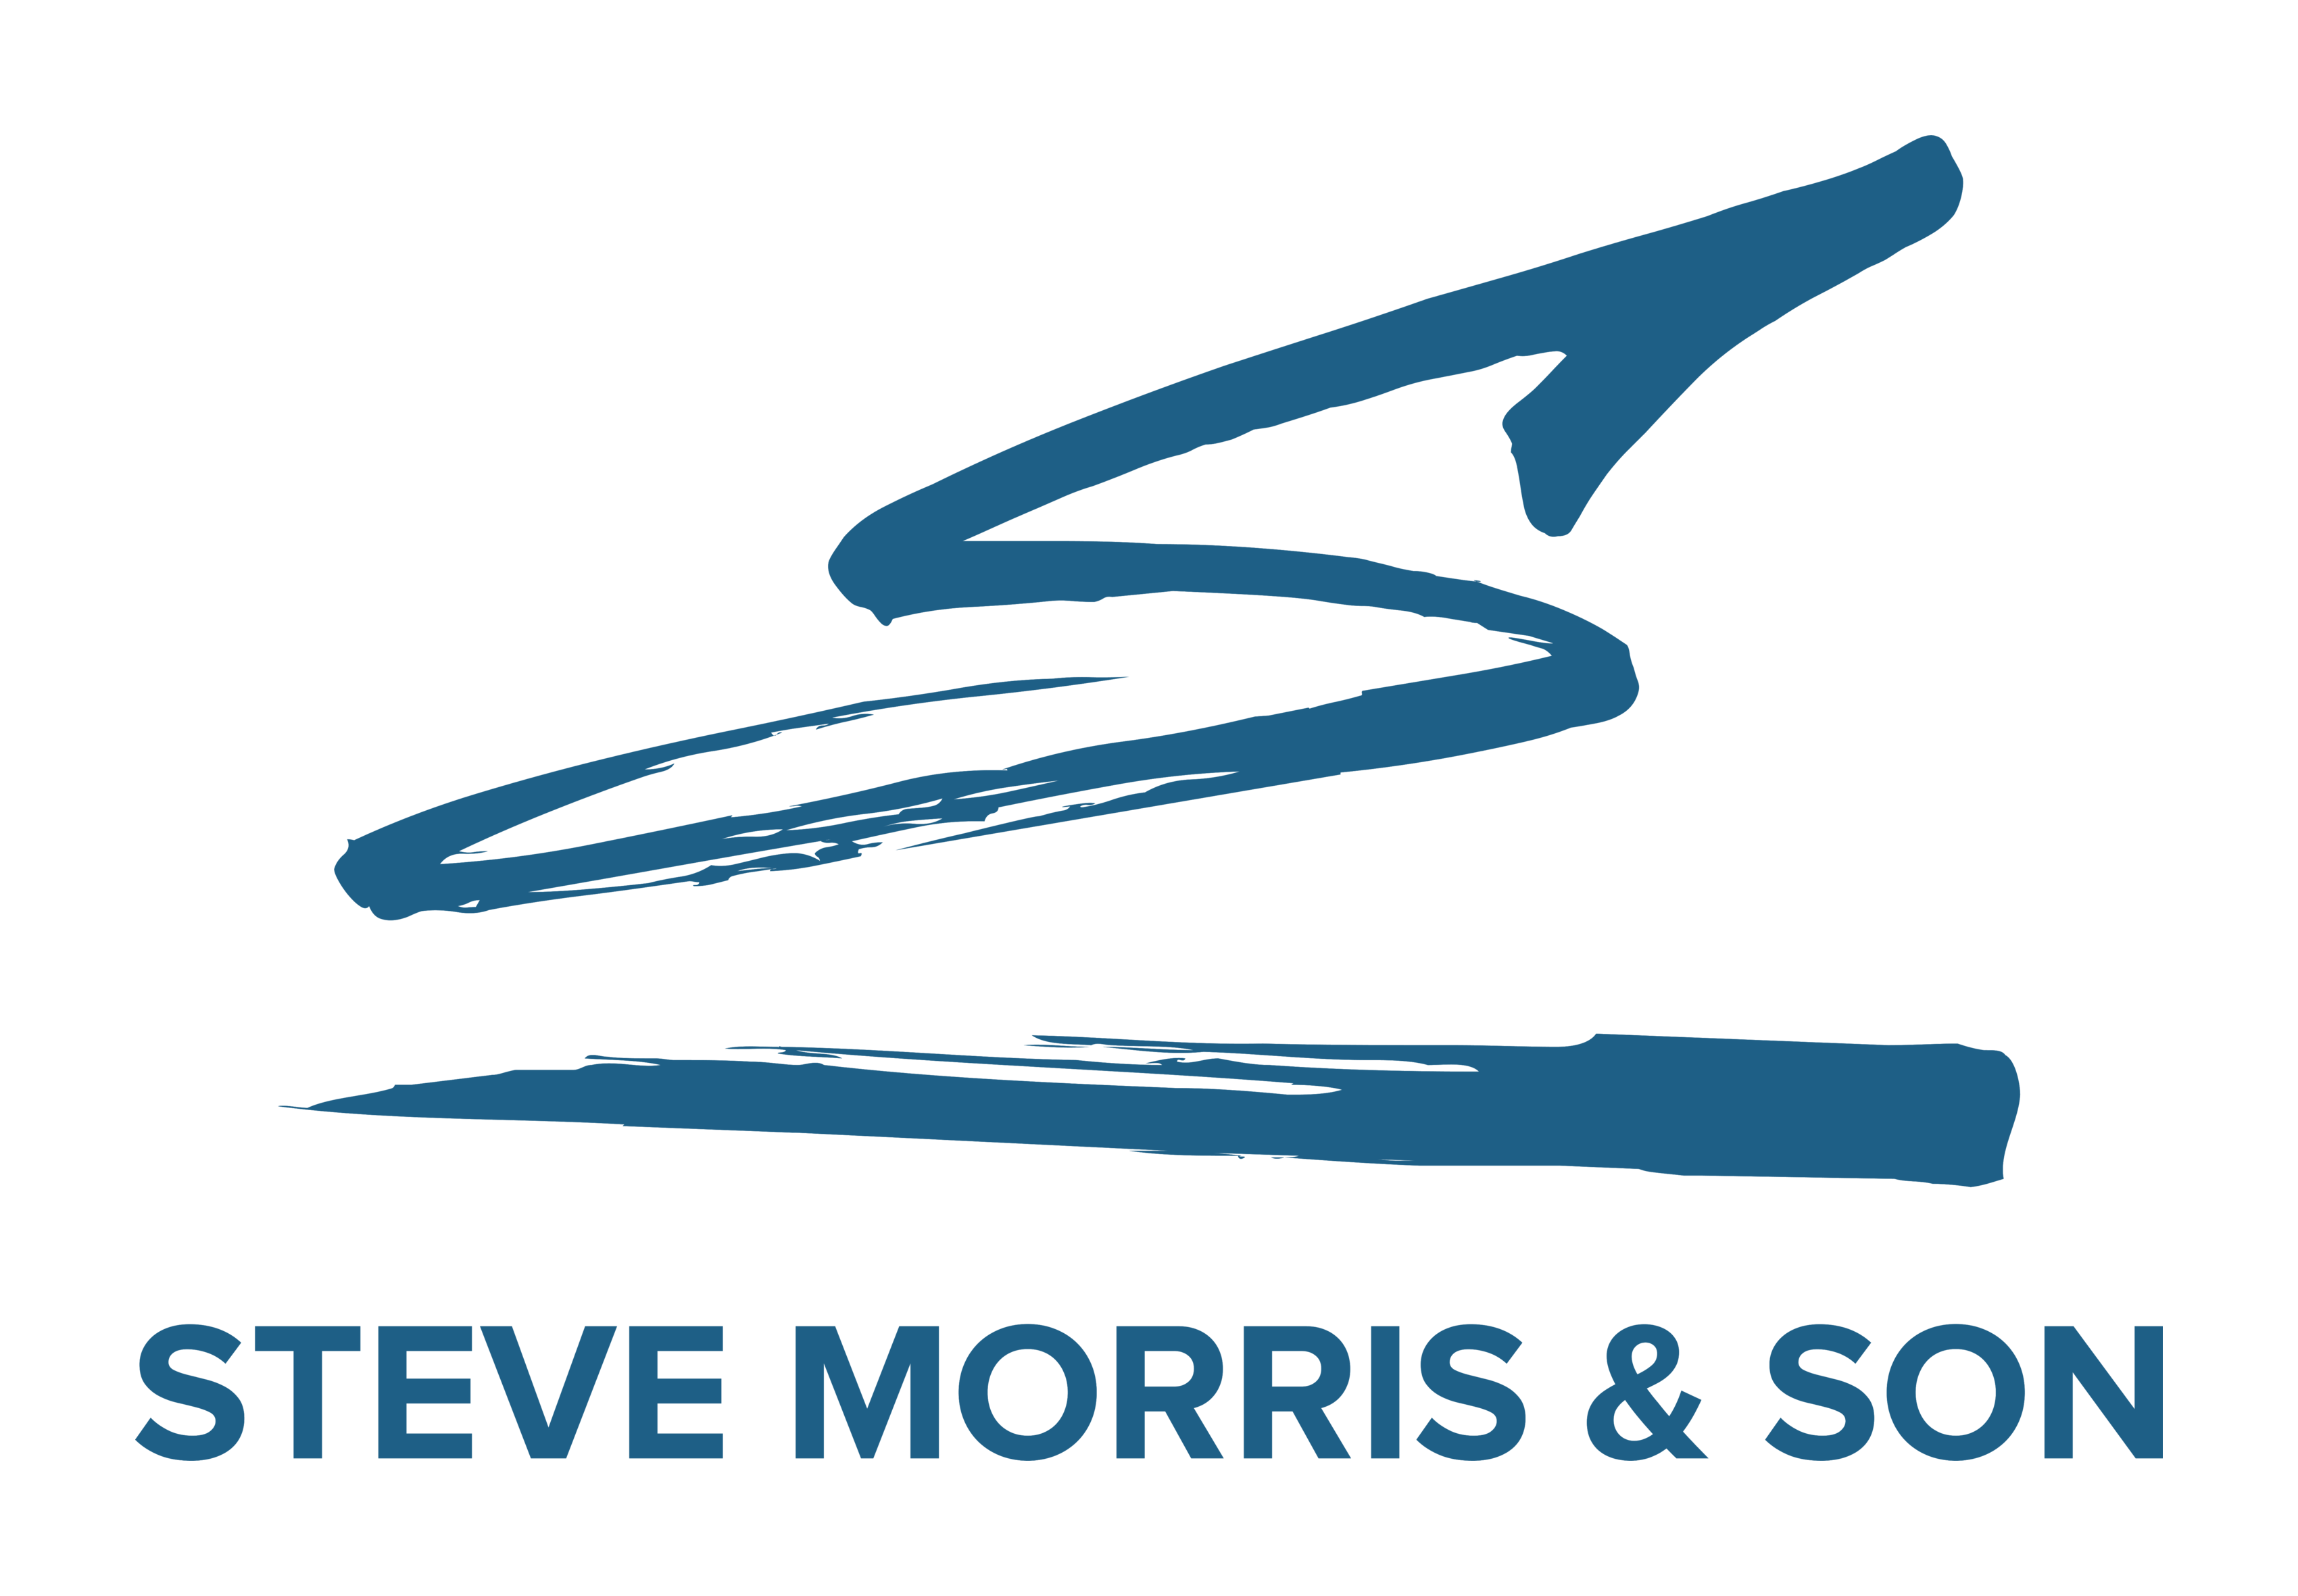 Steve Morris & Son